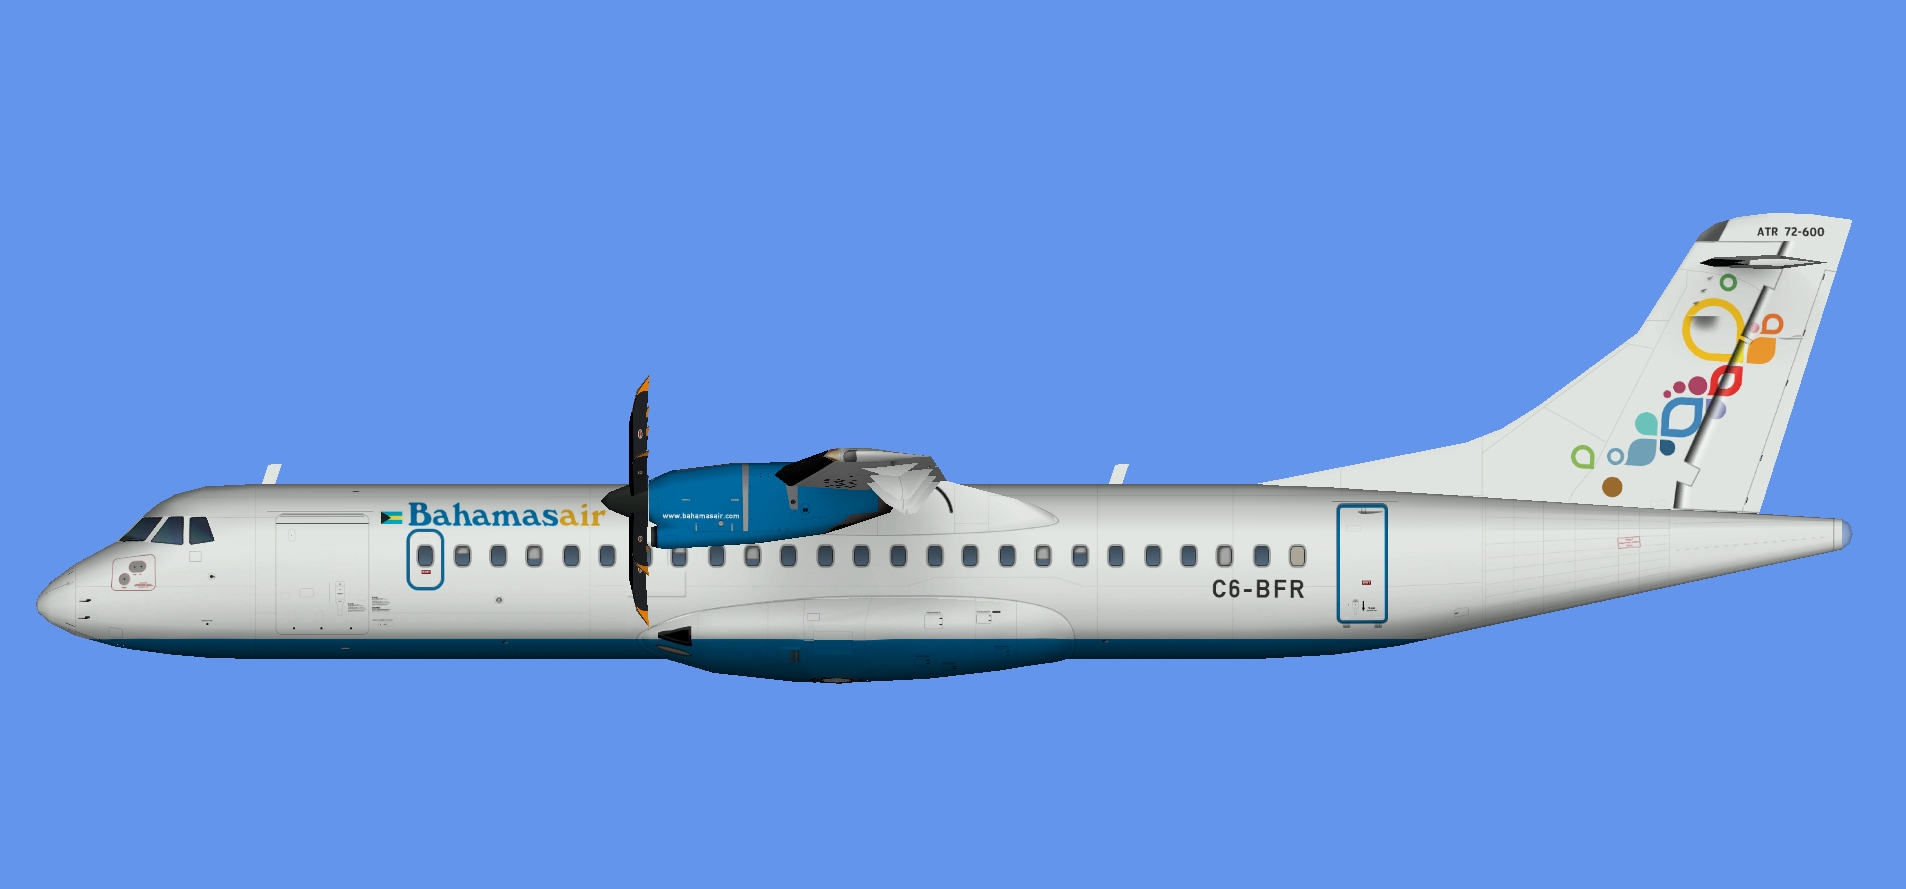 Bahamasair ATR 72-600